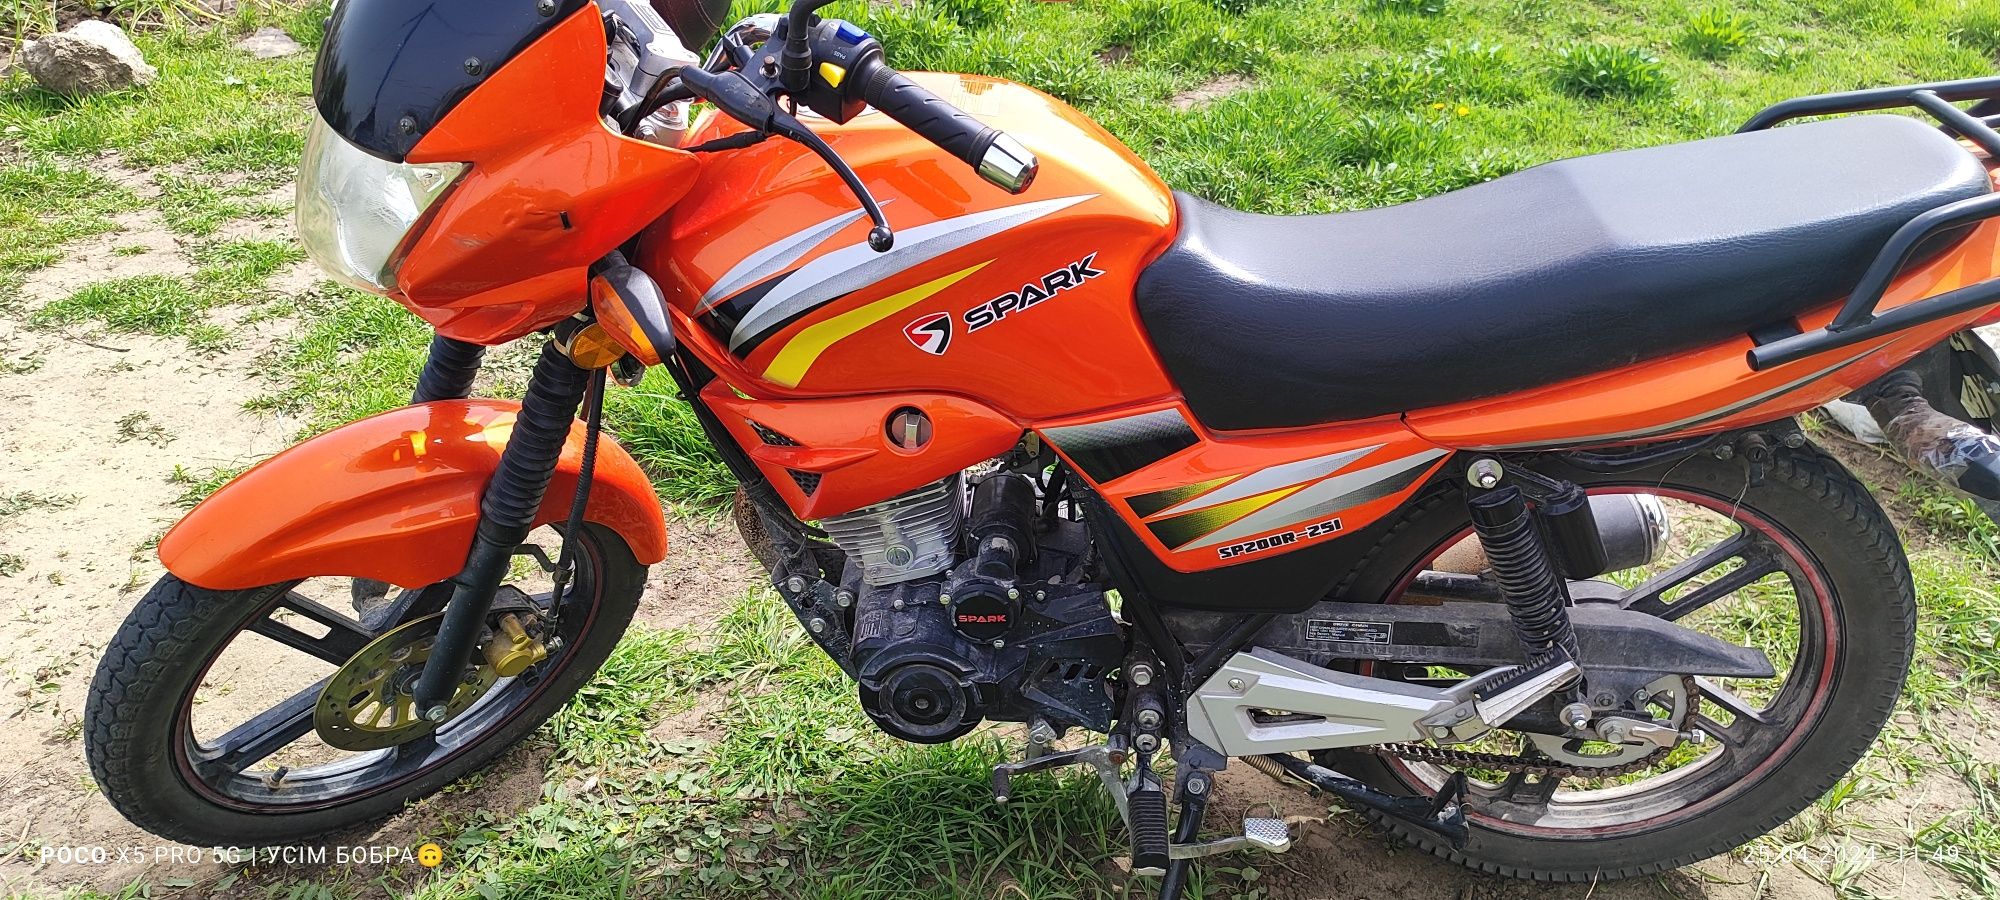 Продам чи поміняю мотоцикл Spark sp200r 25i